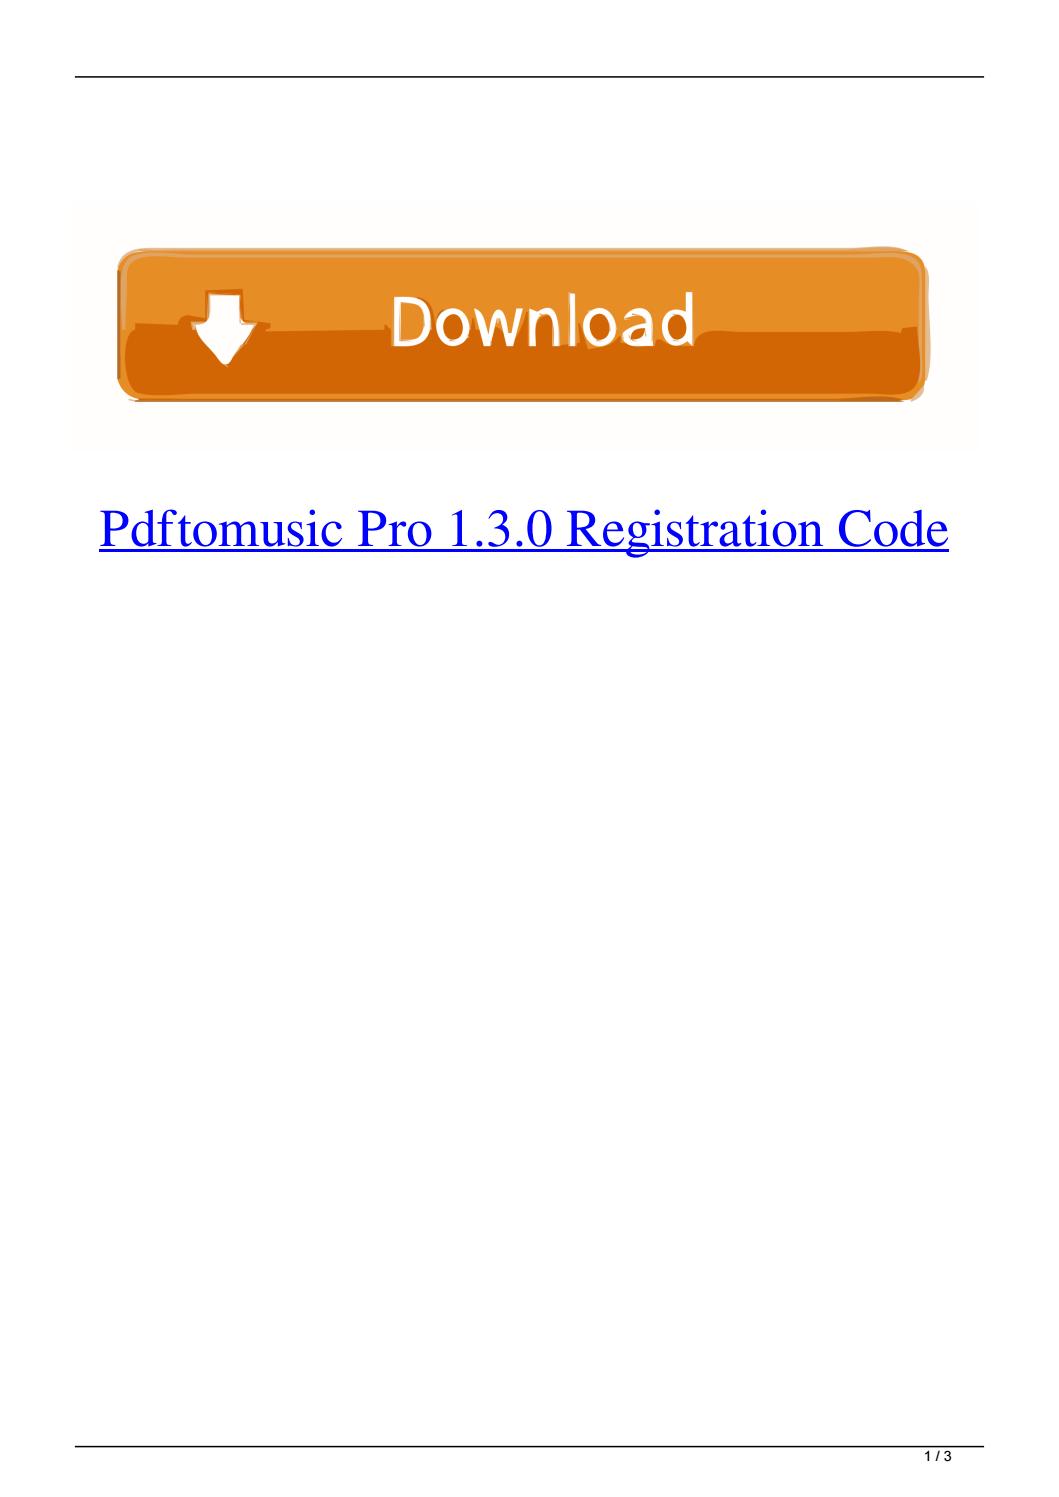 pdftomusic pro 1.5 0 registration code